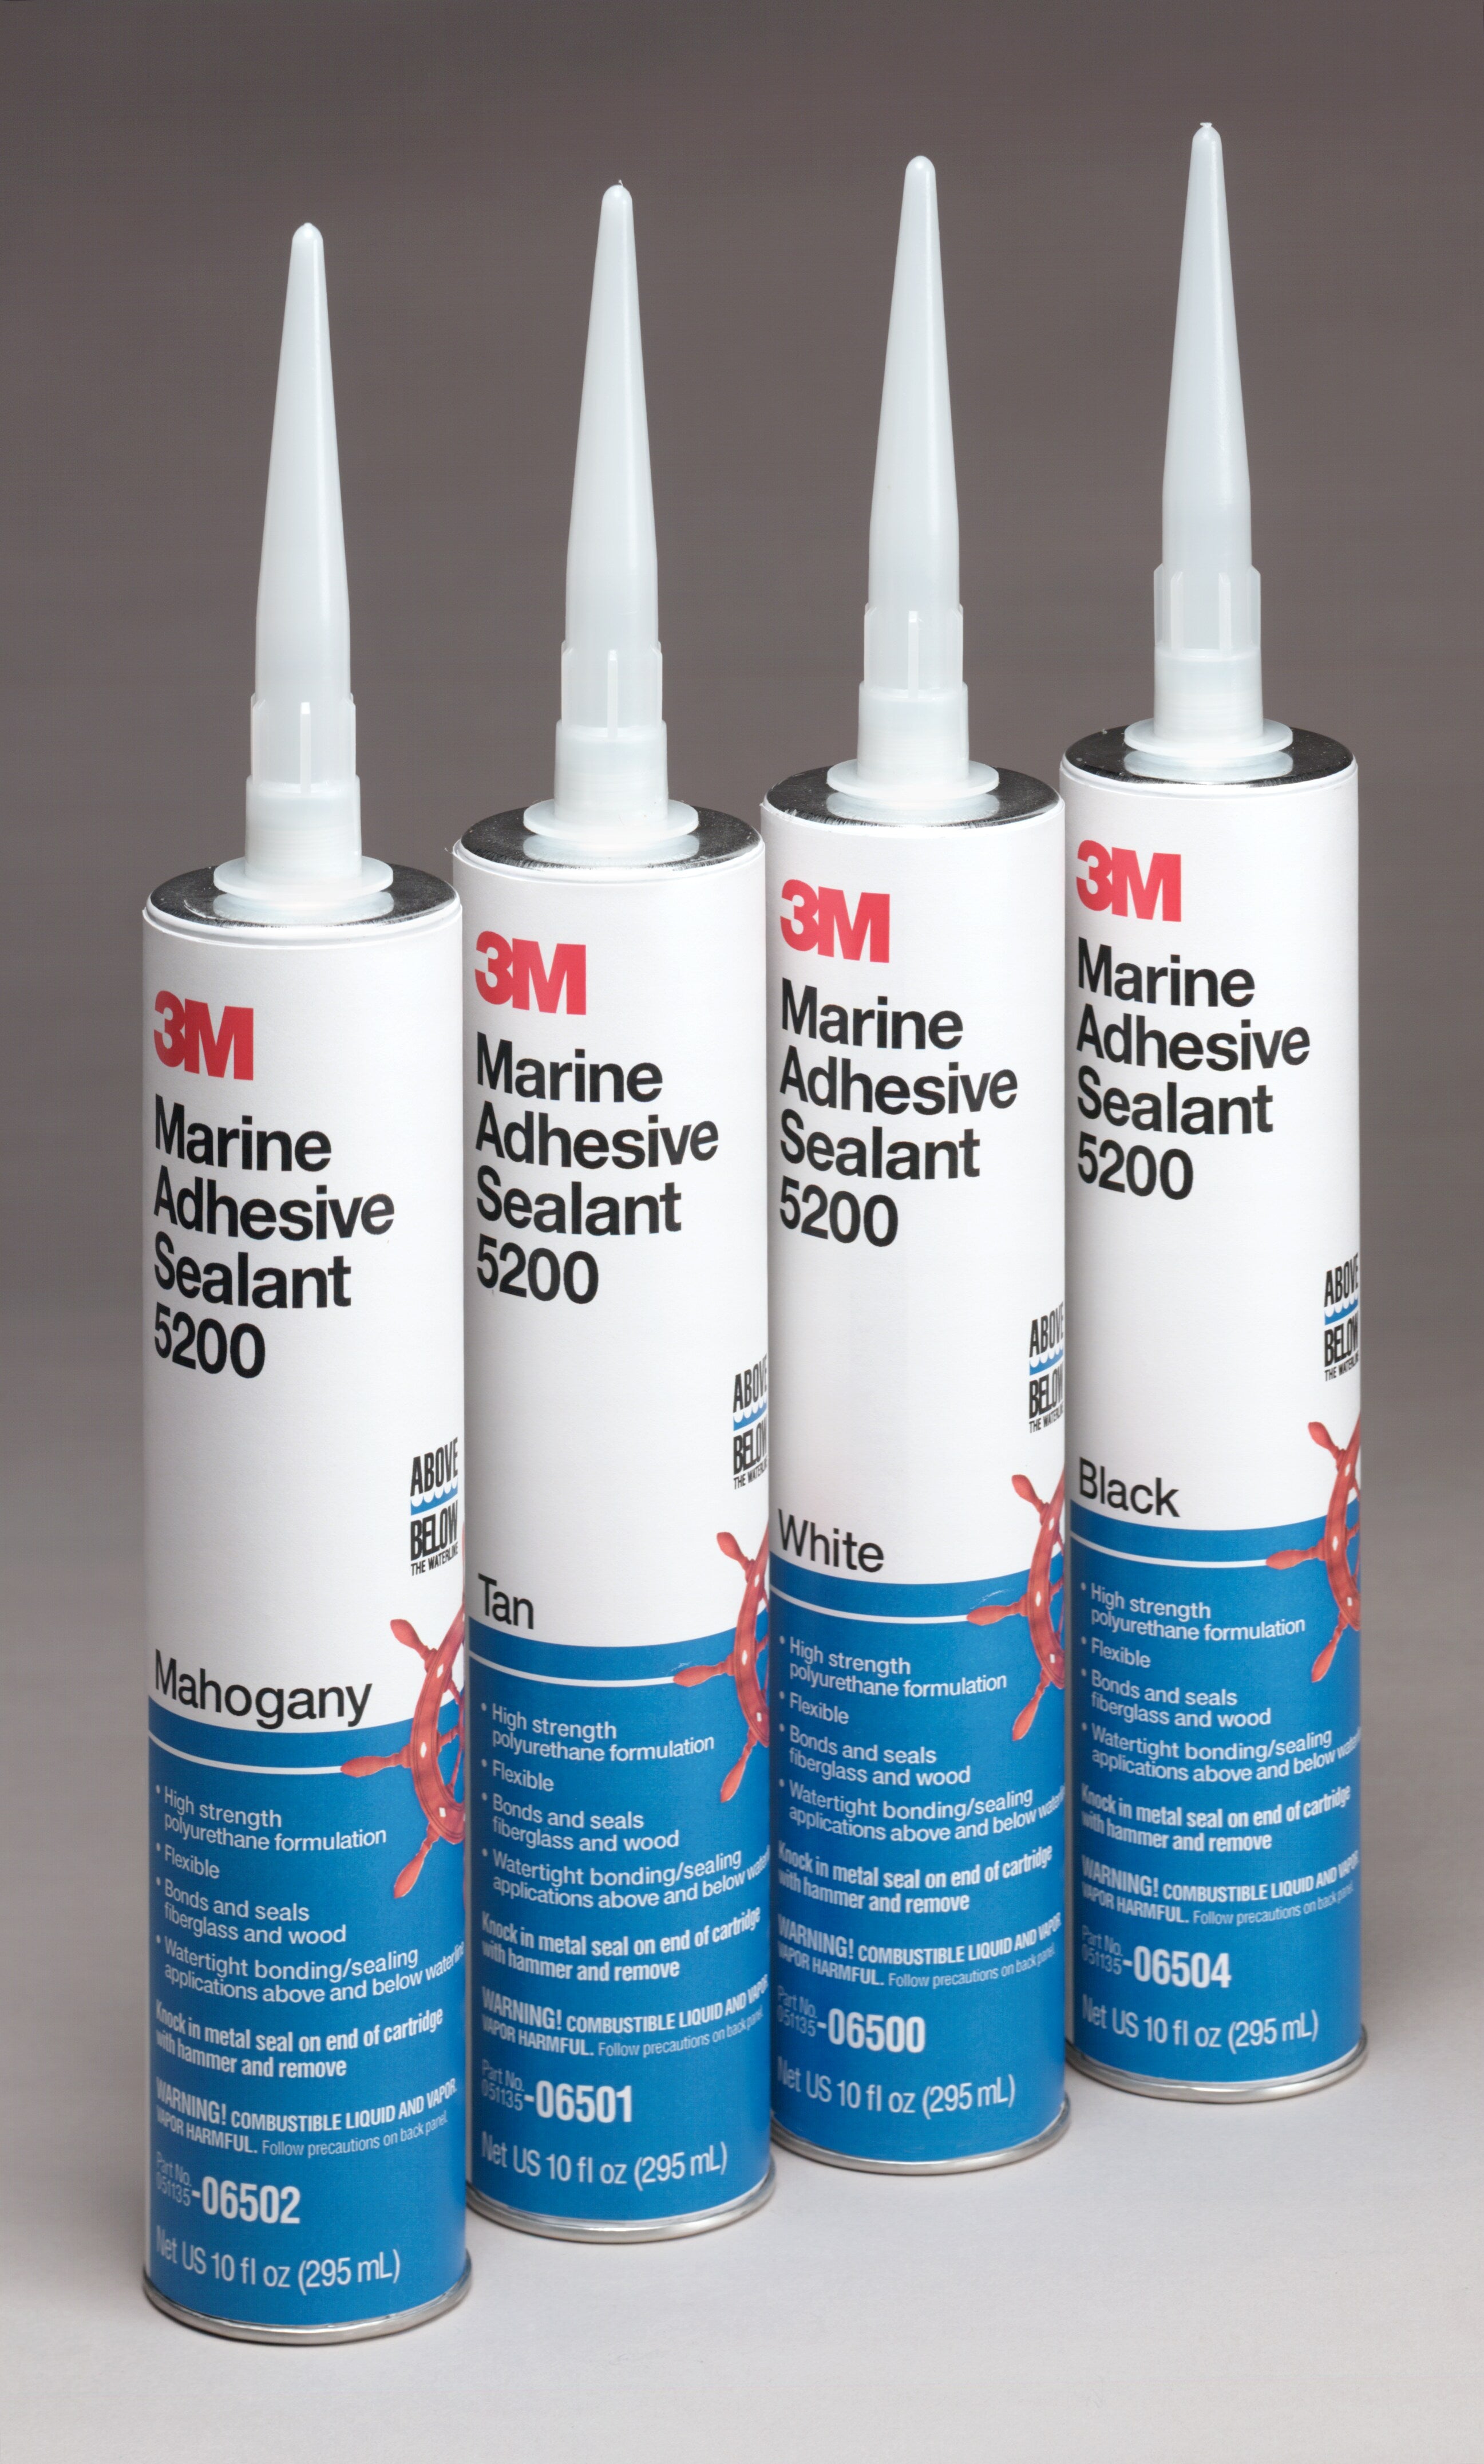 3M™ Marine Adhesive Sealant 5200, White